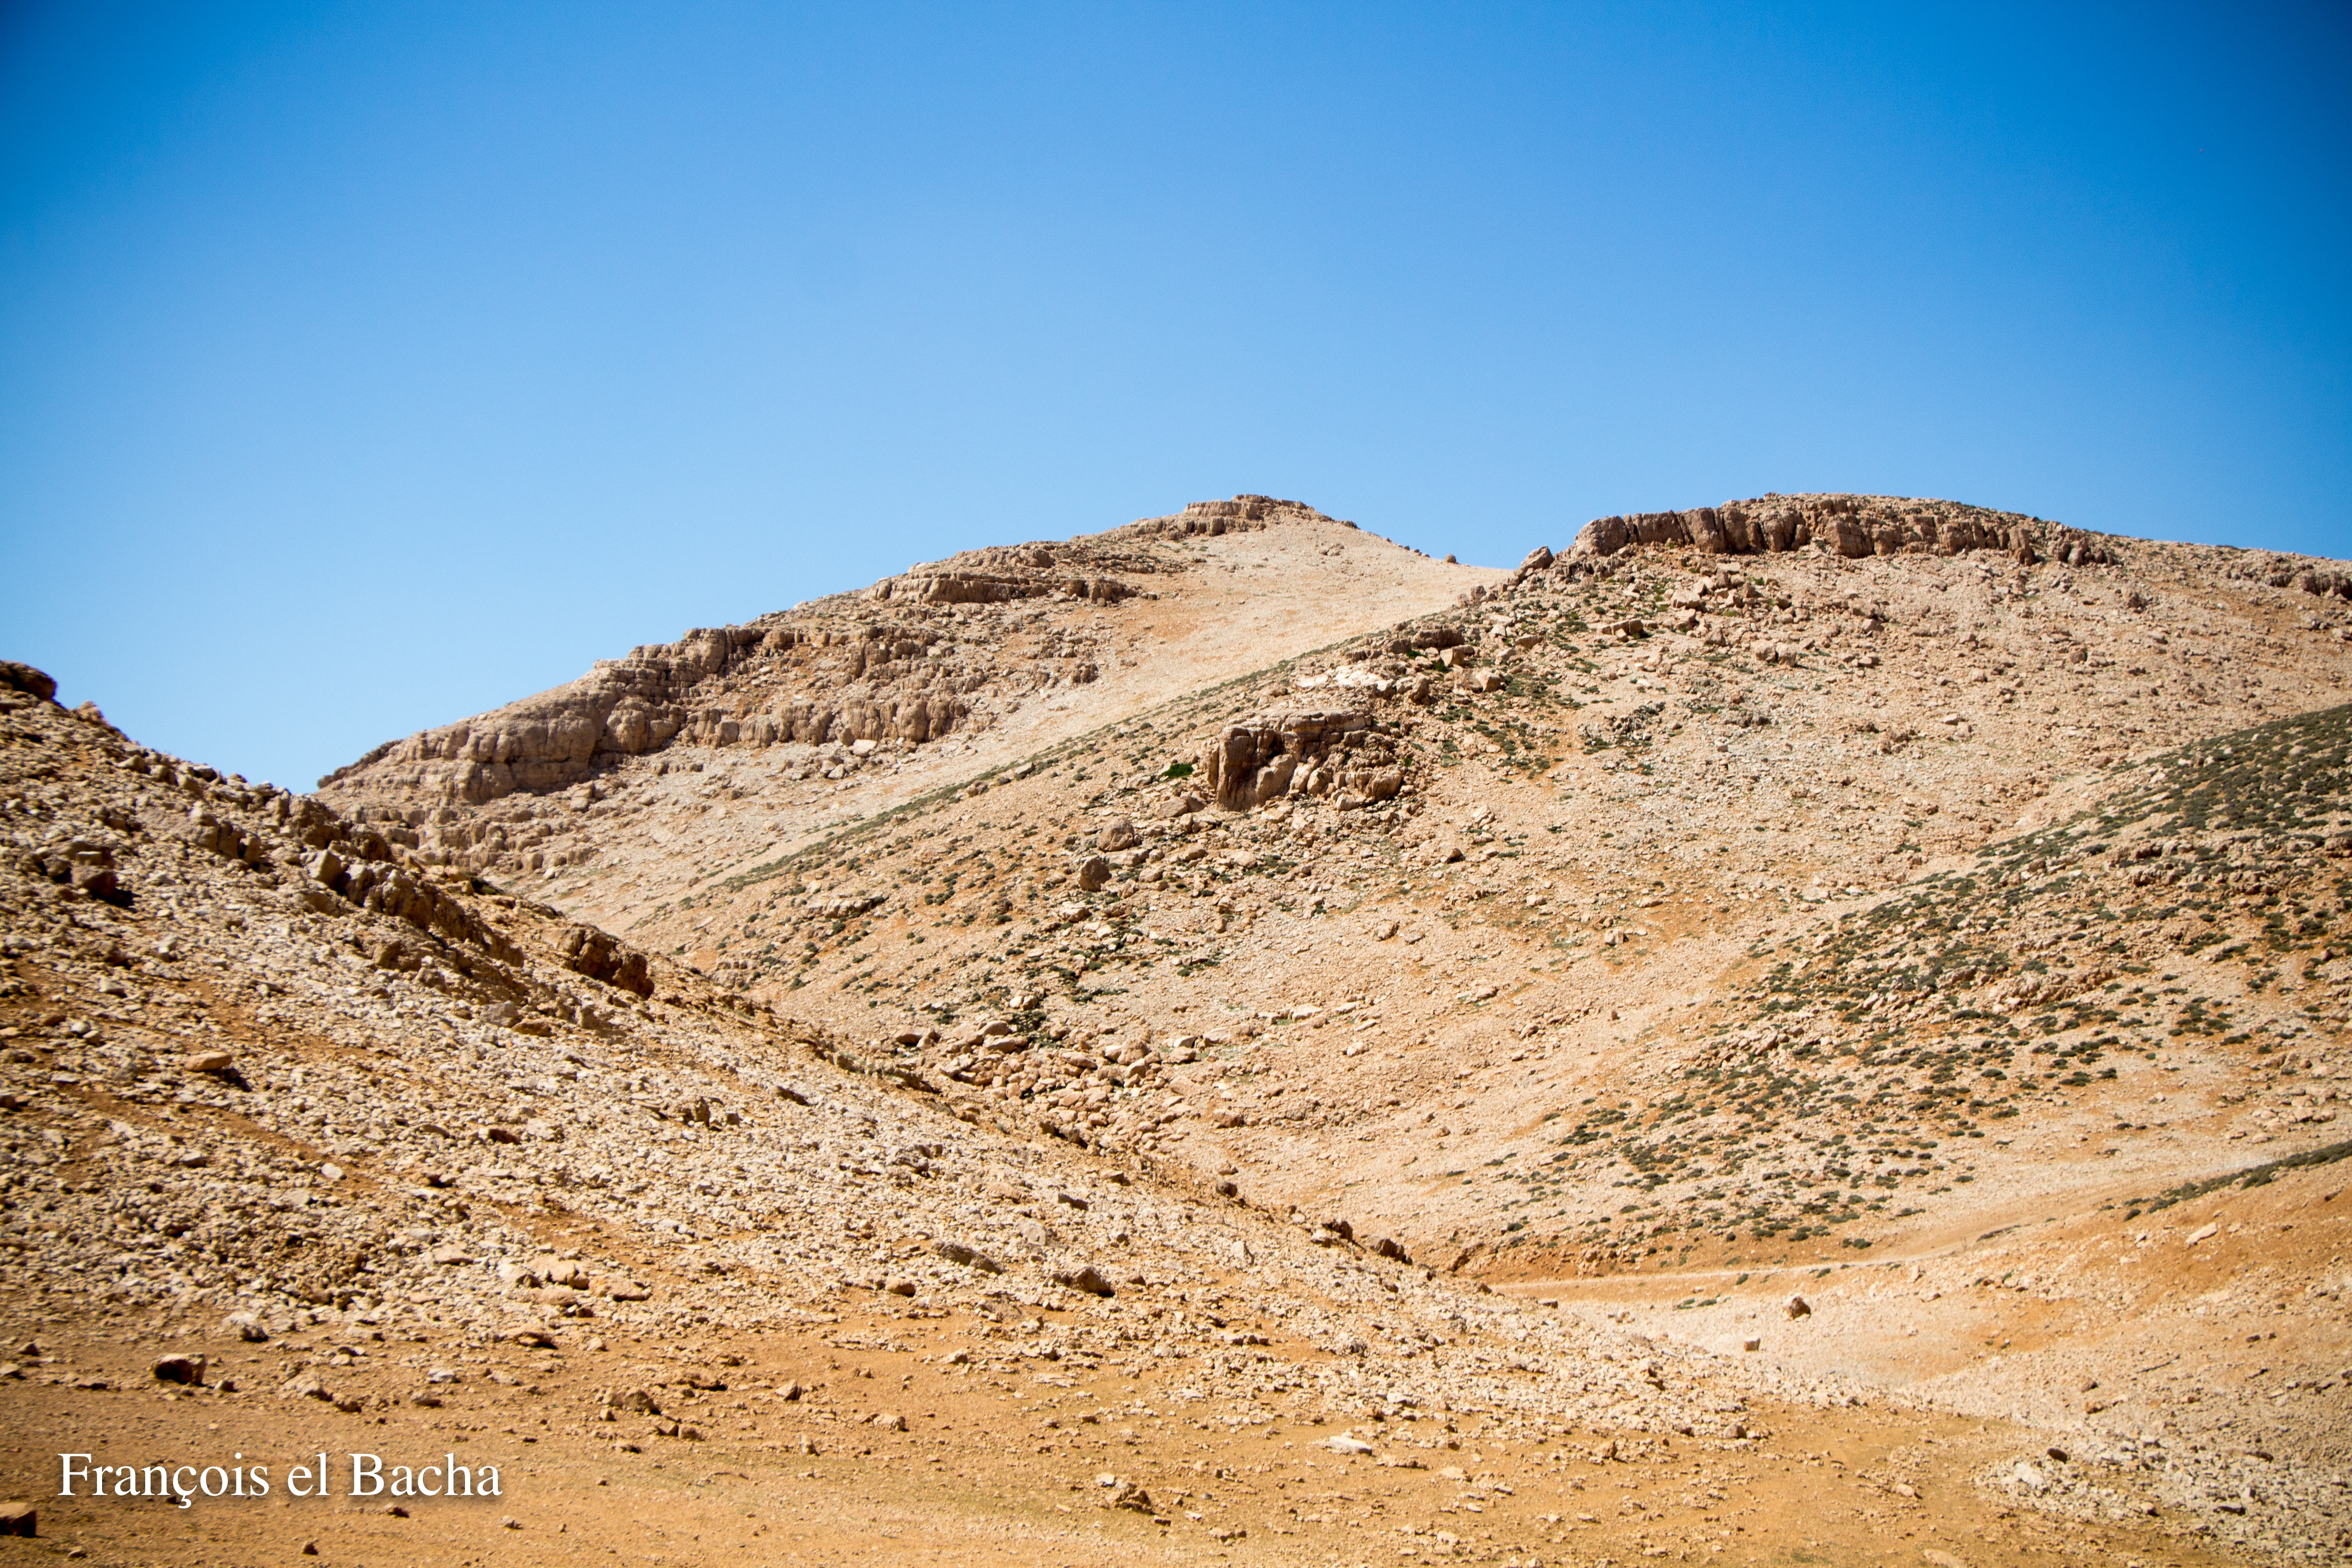 Paysages sur le chemin de randonnée menant à Kornet Saouda. Crédit Photo: François el Bacha, tous droits réservés.